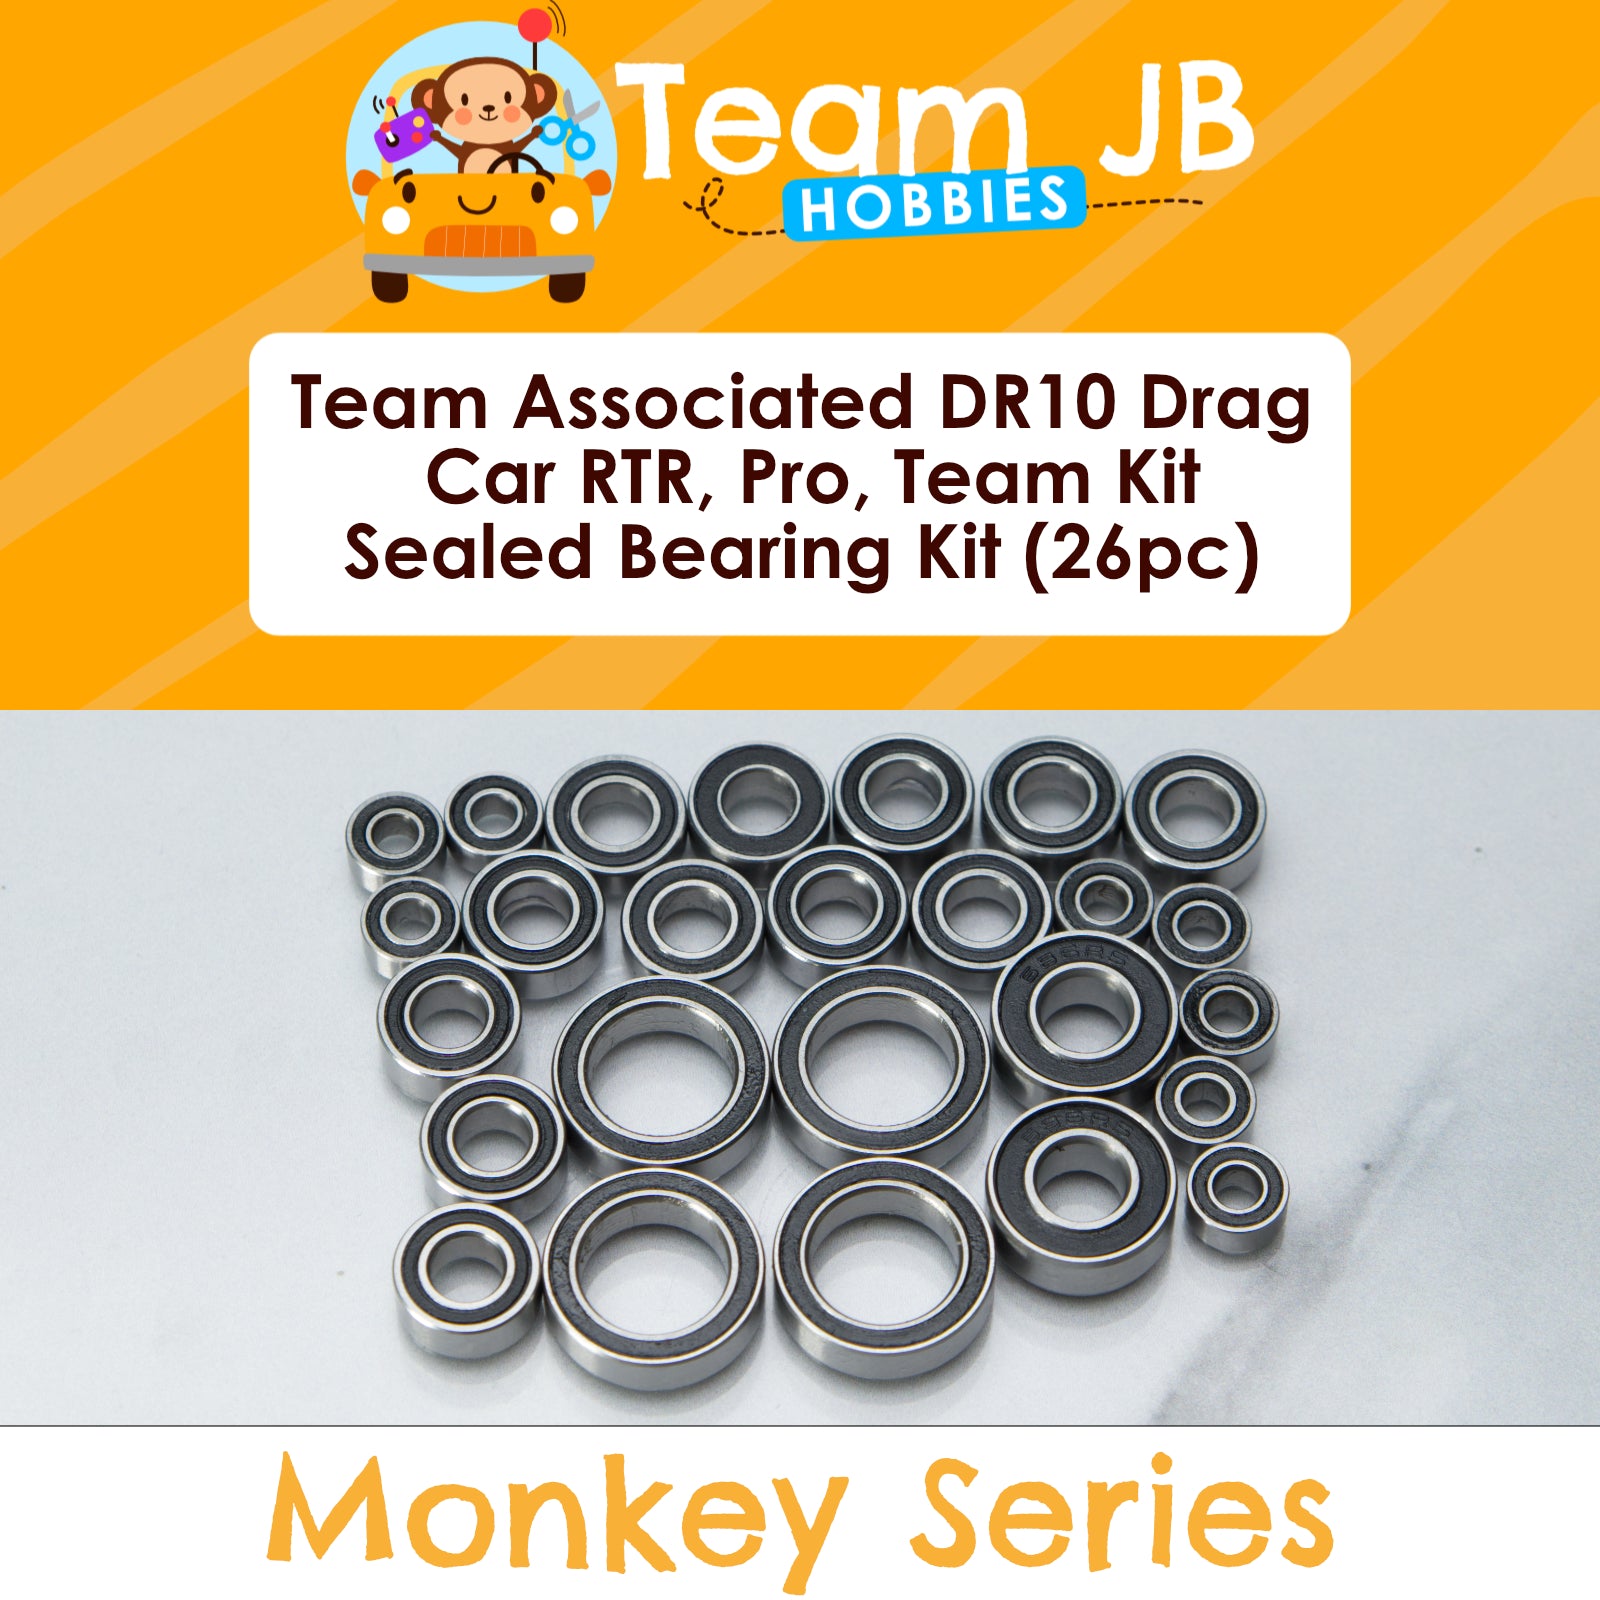 Team Associated DR10 Drag Car RTR, Pro Reakt RTR, Team Kit - Sealed Bearing Kit